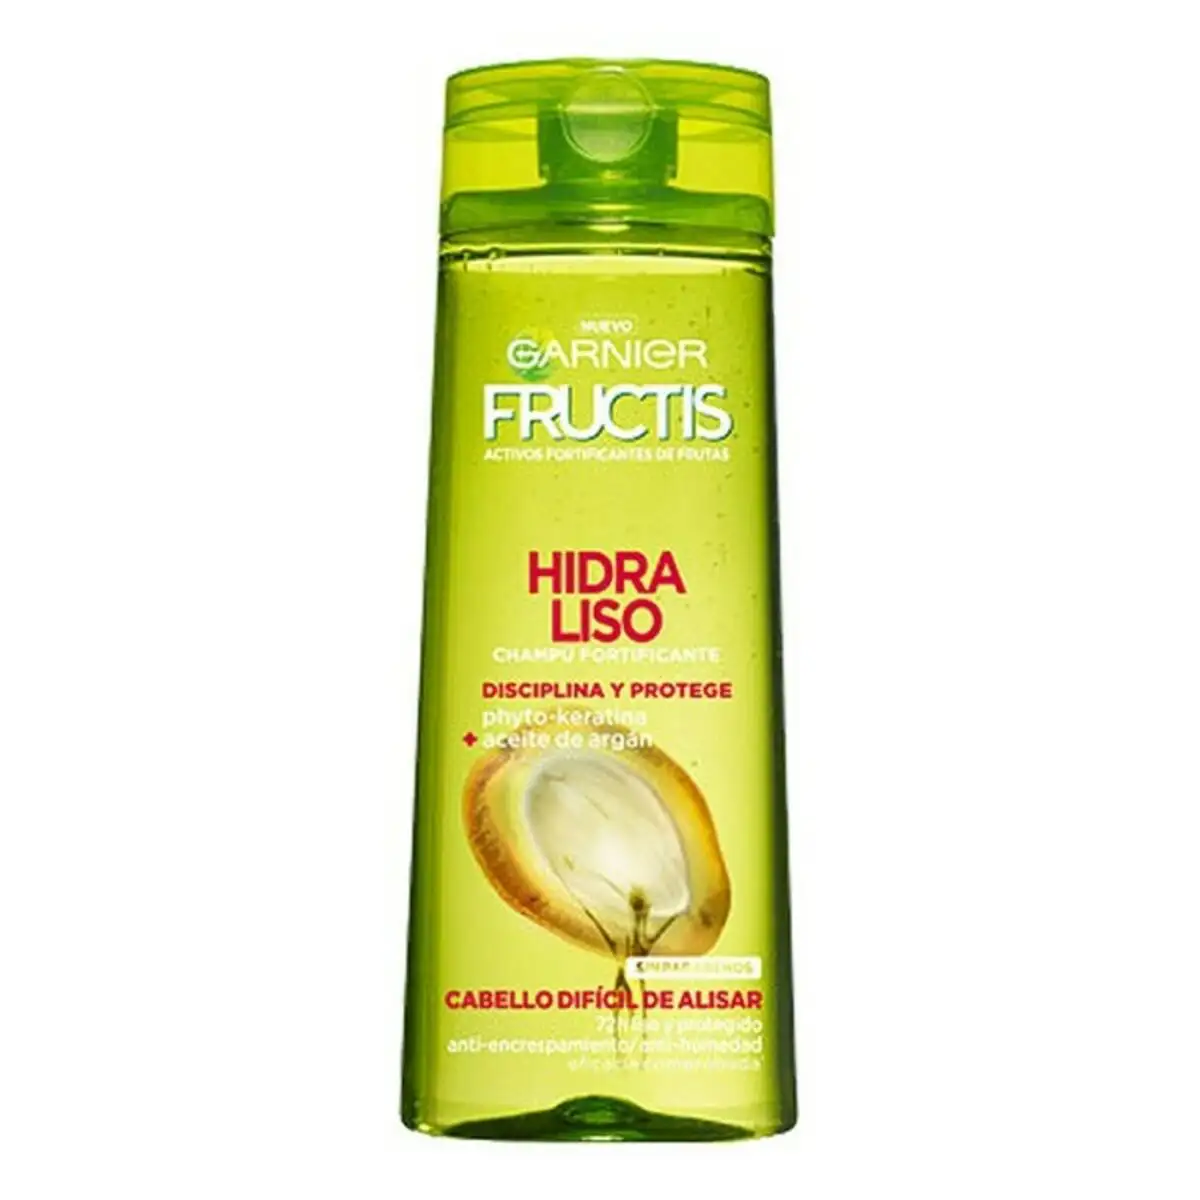 Shampooing lissant fructis hidra liso 72h garnier 360 ml_4275. DIAYTAR SENEGAL - Votre Passage vers l'Éclat et la Beauté. Explorez notre boutique en ligne et trouvez des produits qui subliment votre apparence et votre espace.